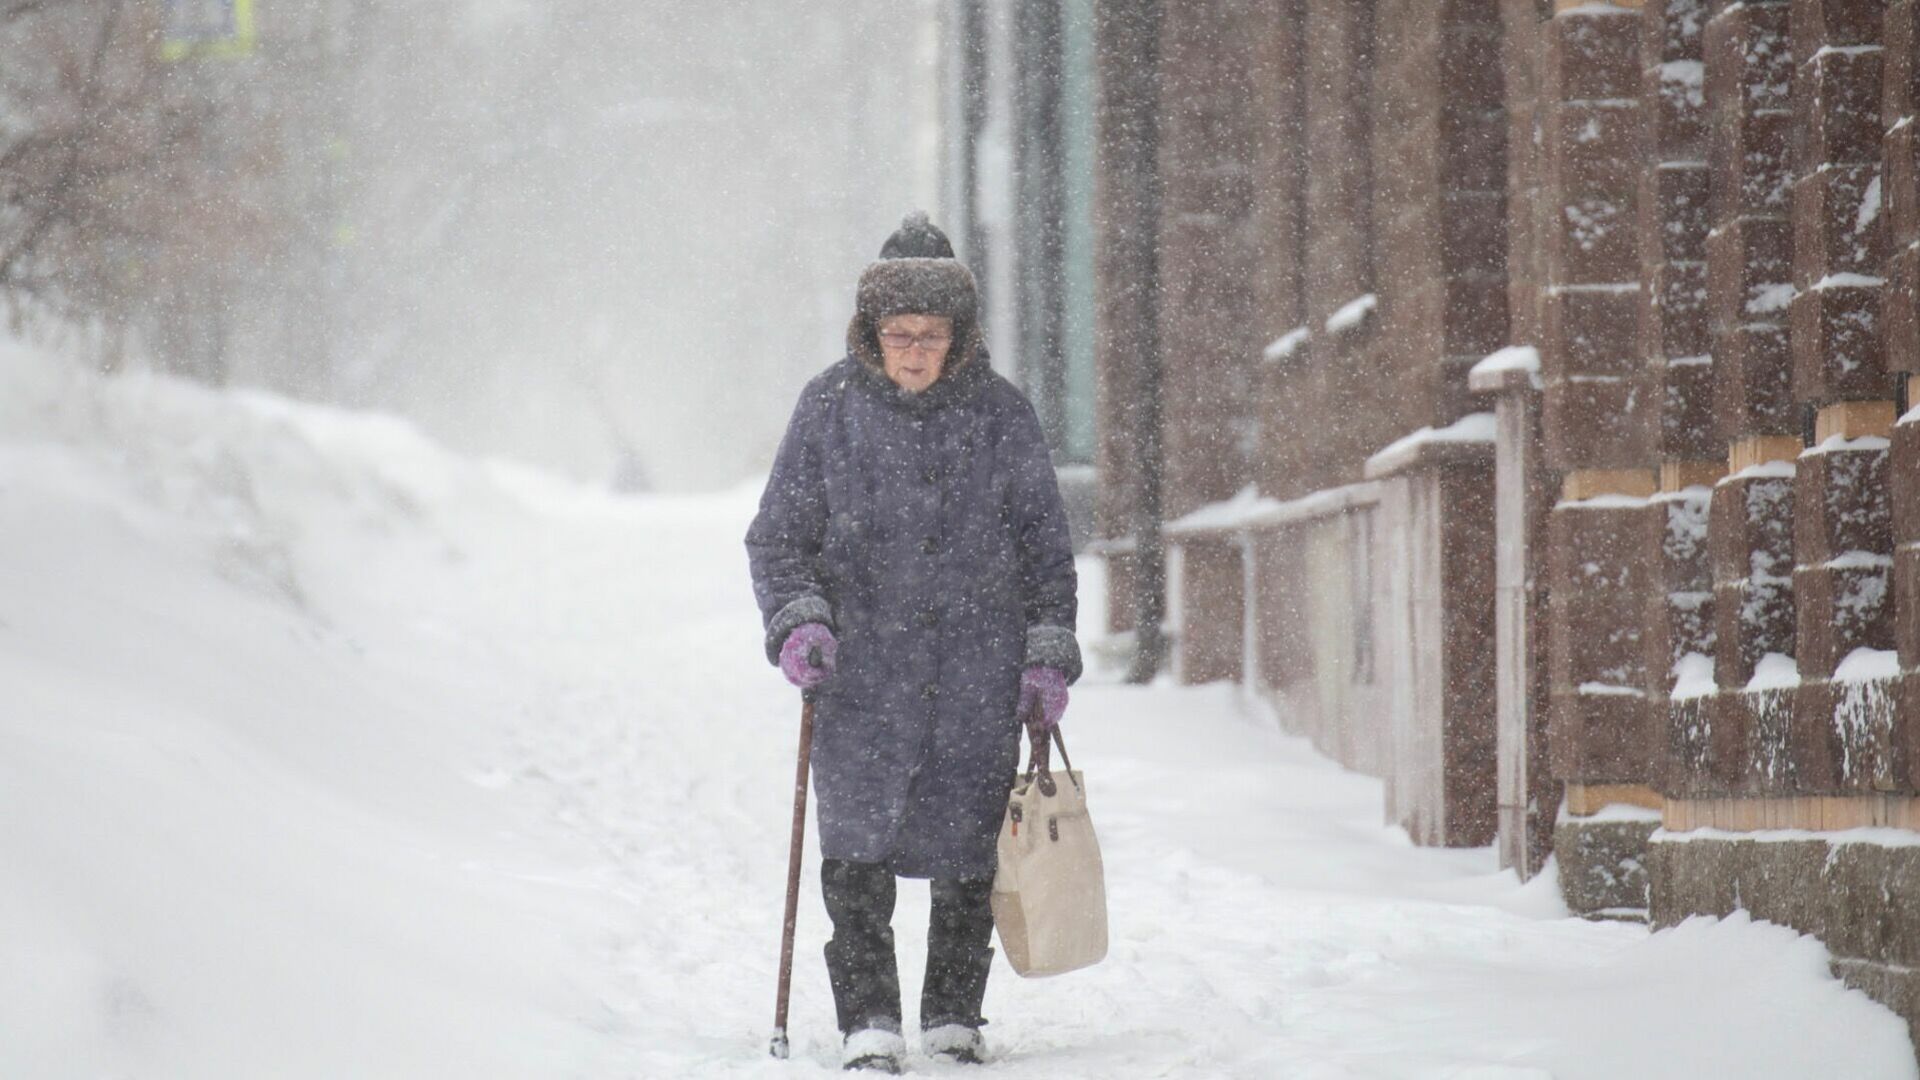 Добираться до больницы пешком по морозу приходится жителям челябинского села